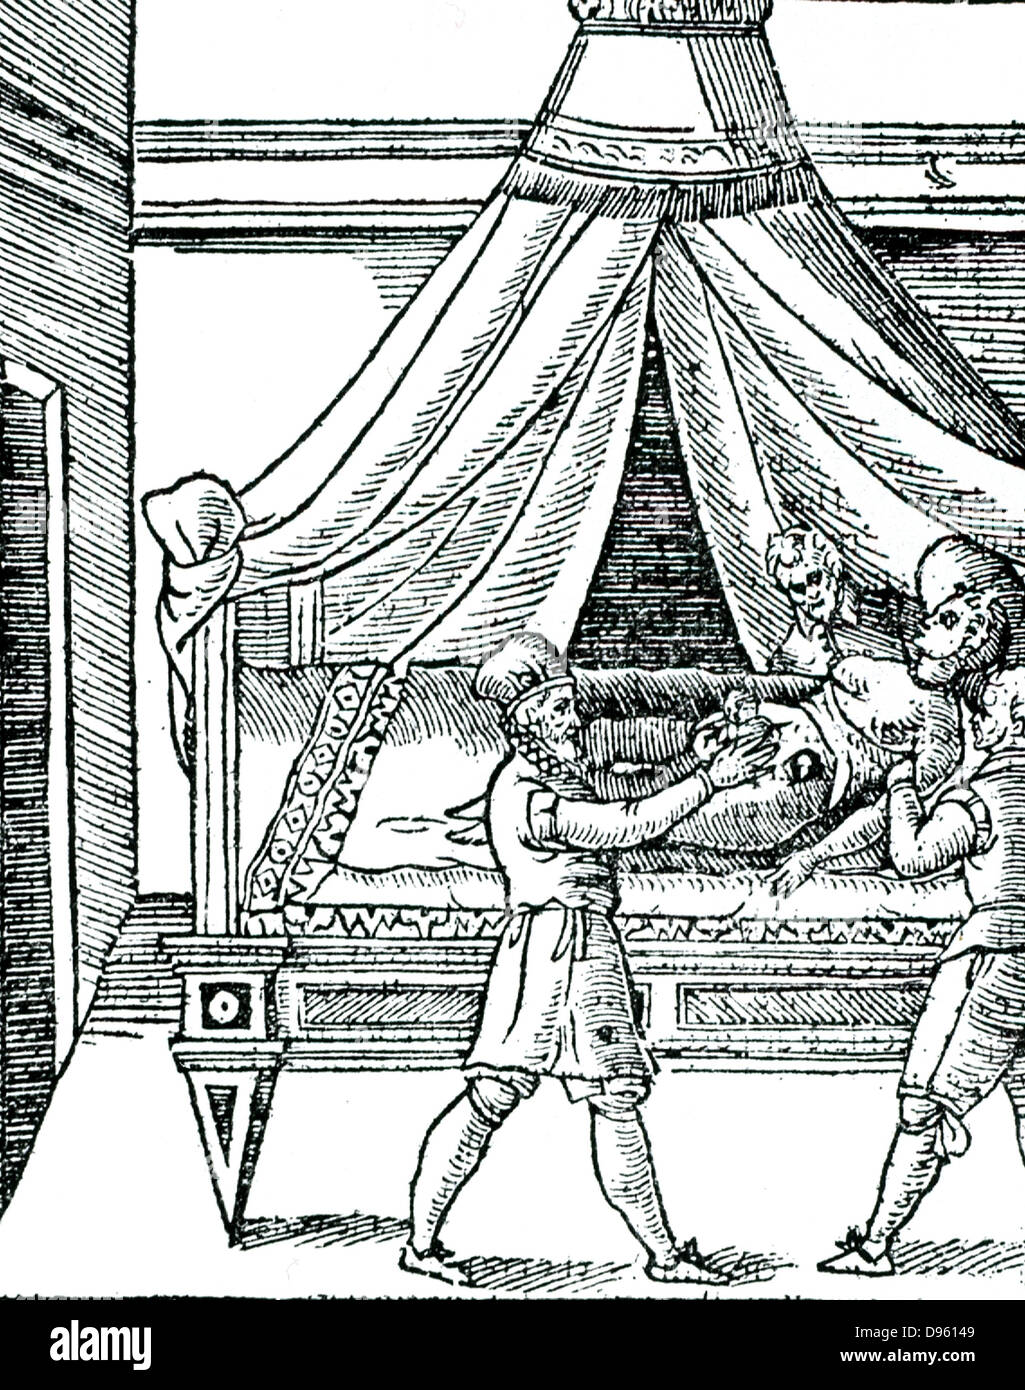 Abbildung: Geburt durch Kaiserschnitt aus Scipione Mercurio 'La Commare o Raccoglitrice...' Verona, 1642. Mercurio empfohlen Kaiserschnitt in Fällen der vertraglichen Becken. Diese wichtige Italienische arbeiten an der Geburtshilfe wurde erstmals im Jahre 1596 veröffentlicht. Stockfoto